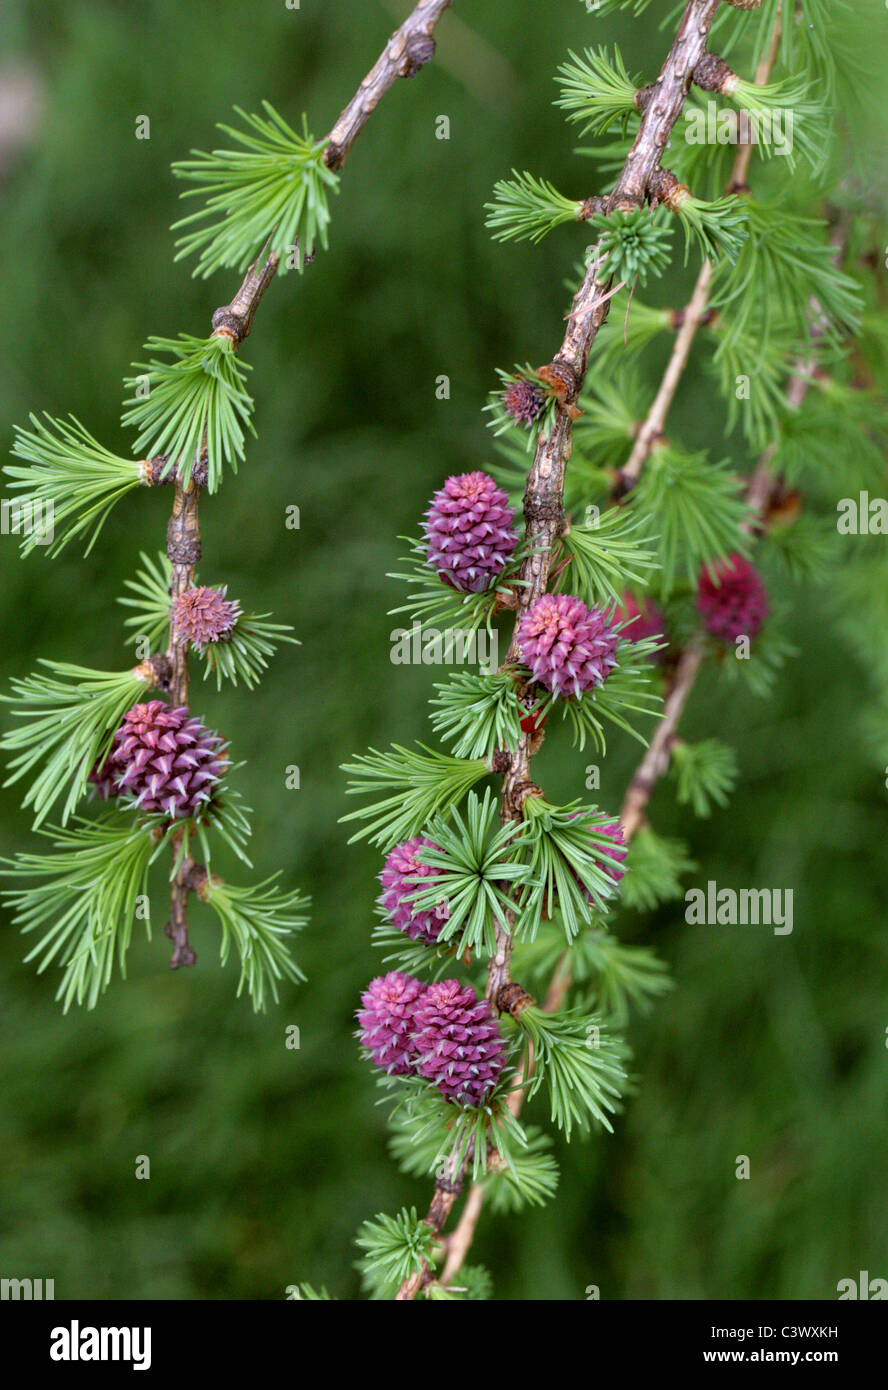 European Larch, Larix decidua, Pinaceae. Europe. Young Cones in Spring. Stock Photo